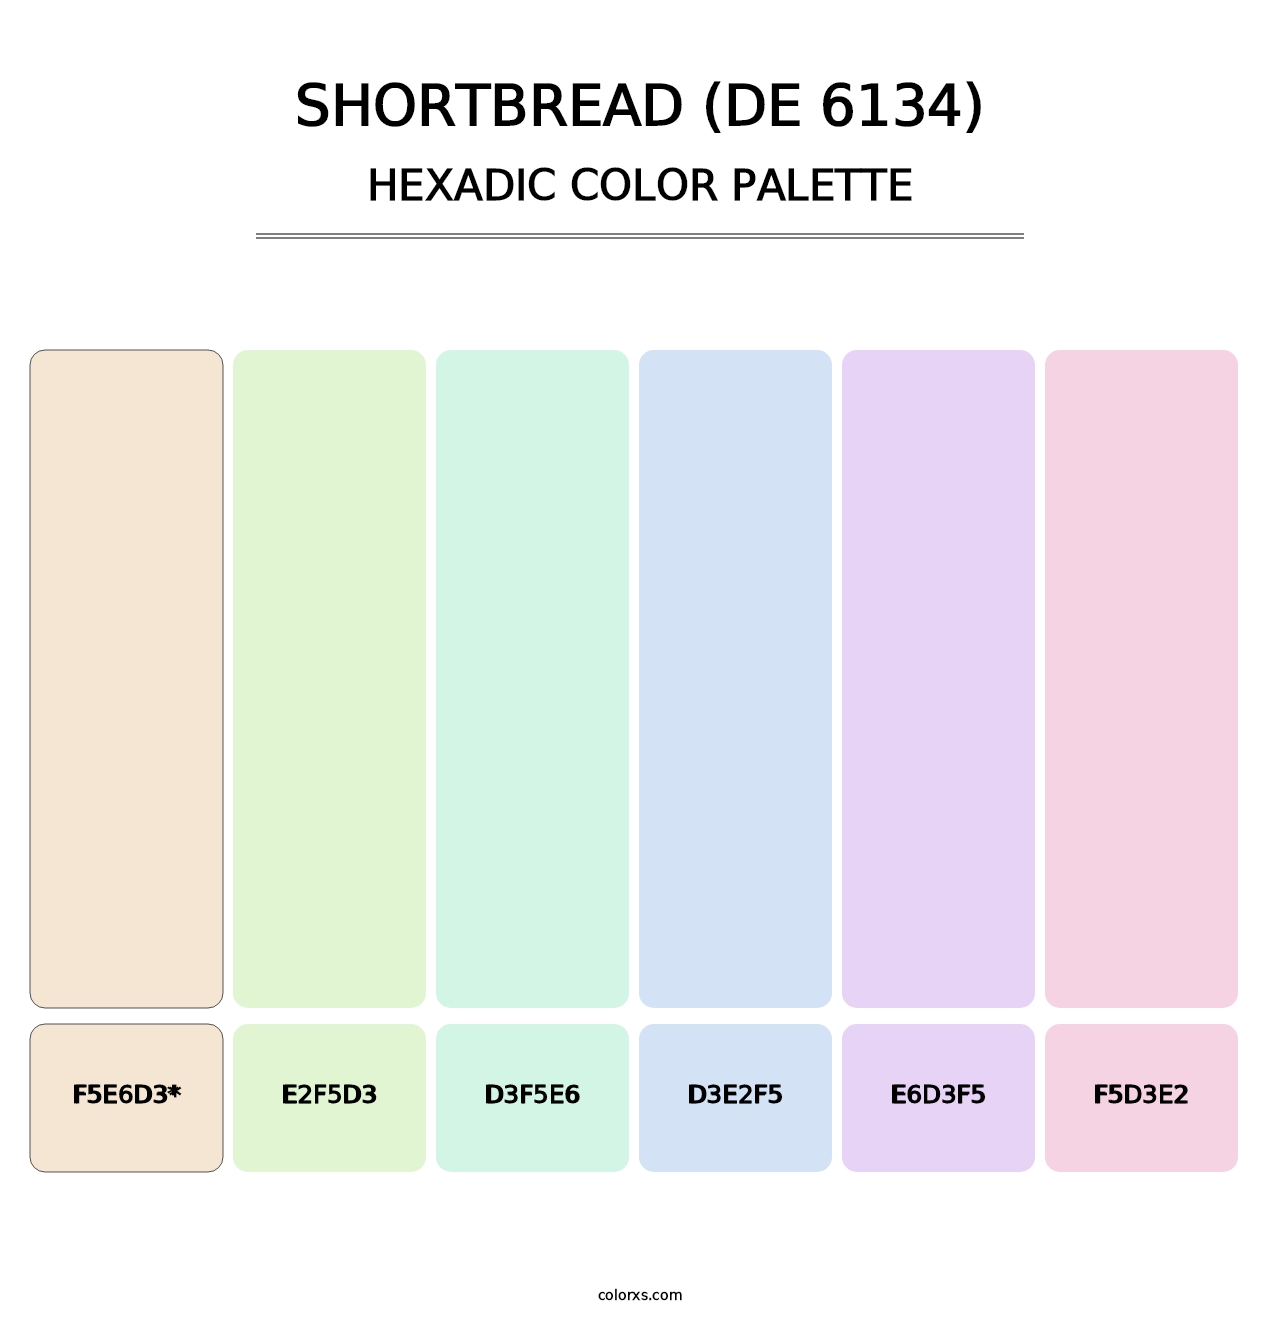 Shortbread (DE 6134) - Hexadic Color Palette